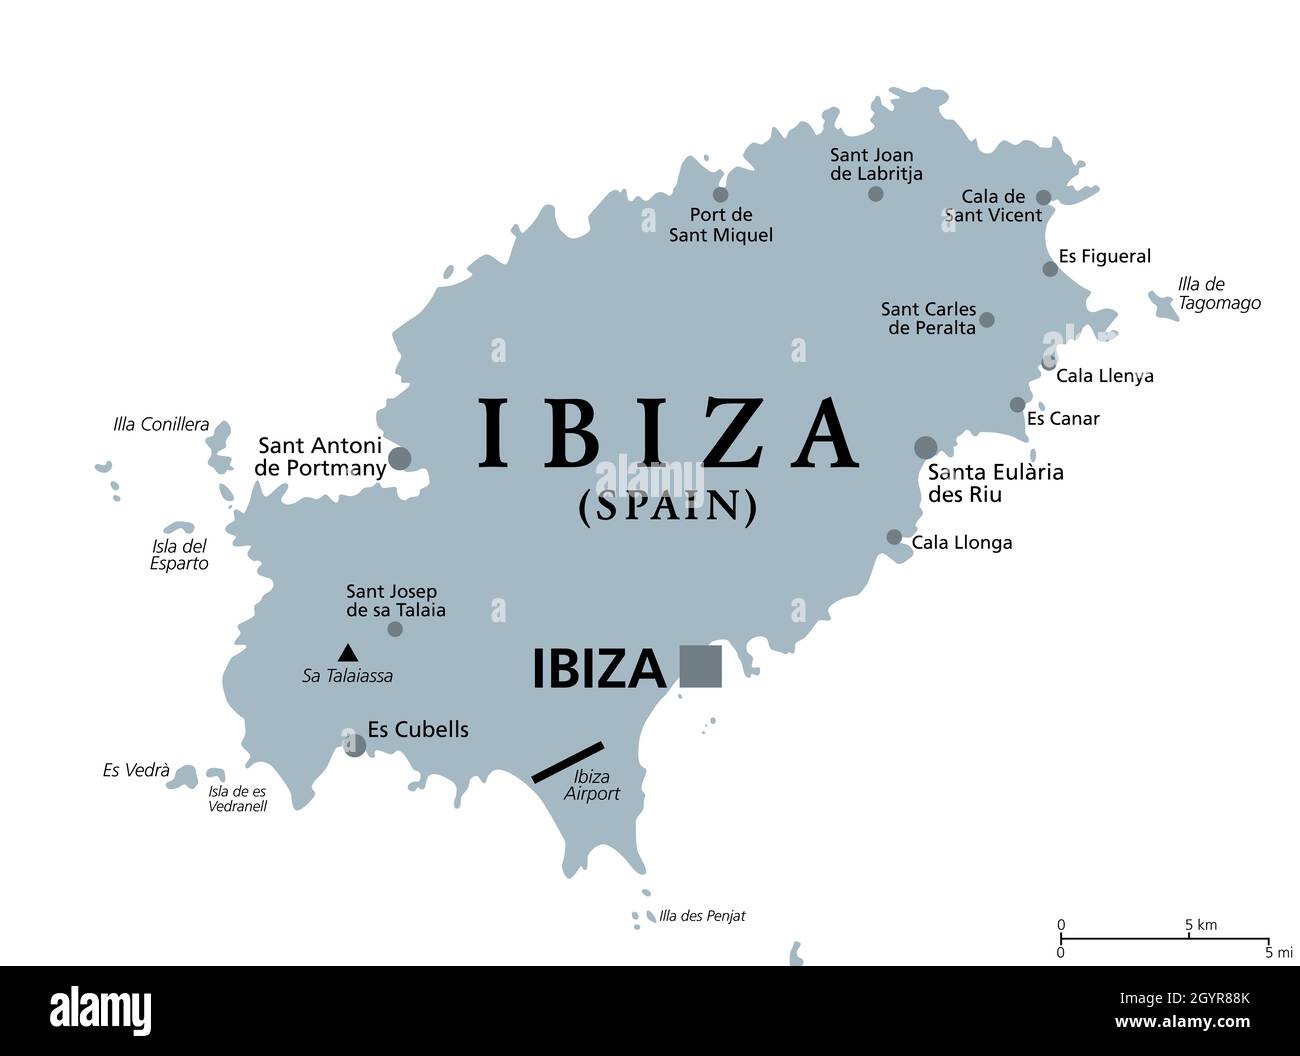 Ibiza, graue politische Landkarte. Teil der Balearen, einer Inselgruppe und autonomen Gemeinschaft Spaniens im Mittelmeer. Stockfoto